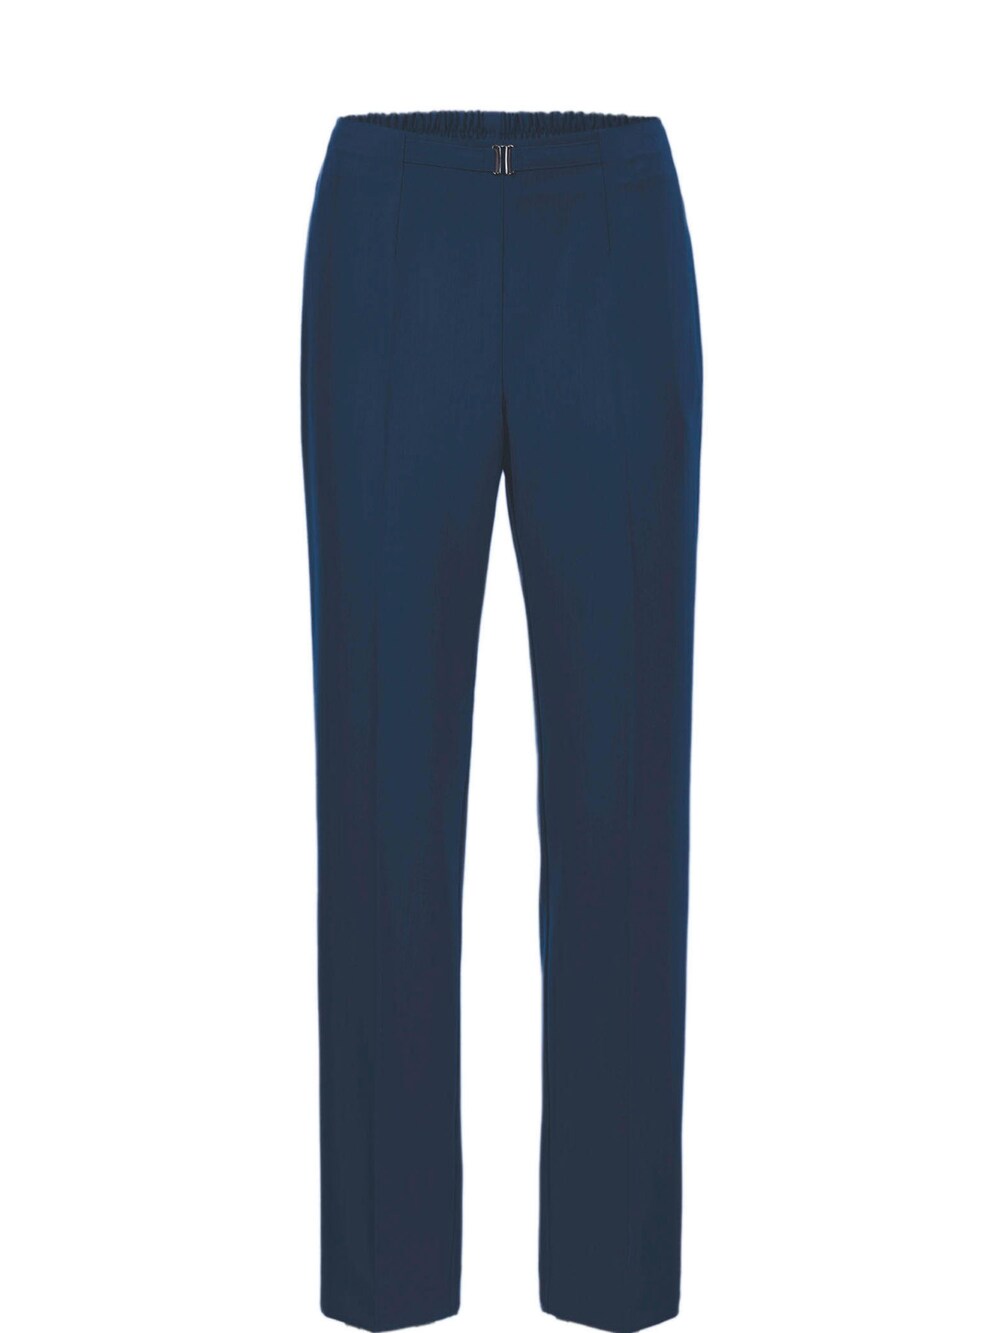 Обычные плиссированные брюки Goldner Martha, синий